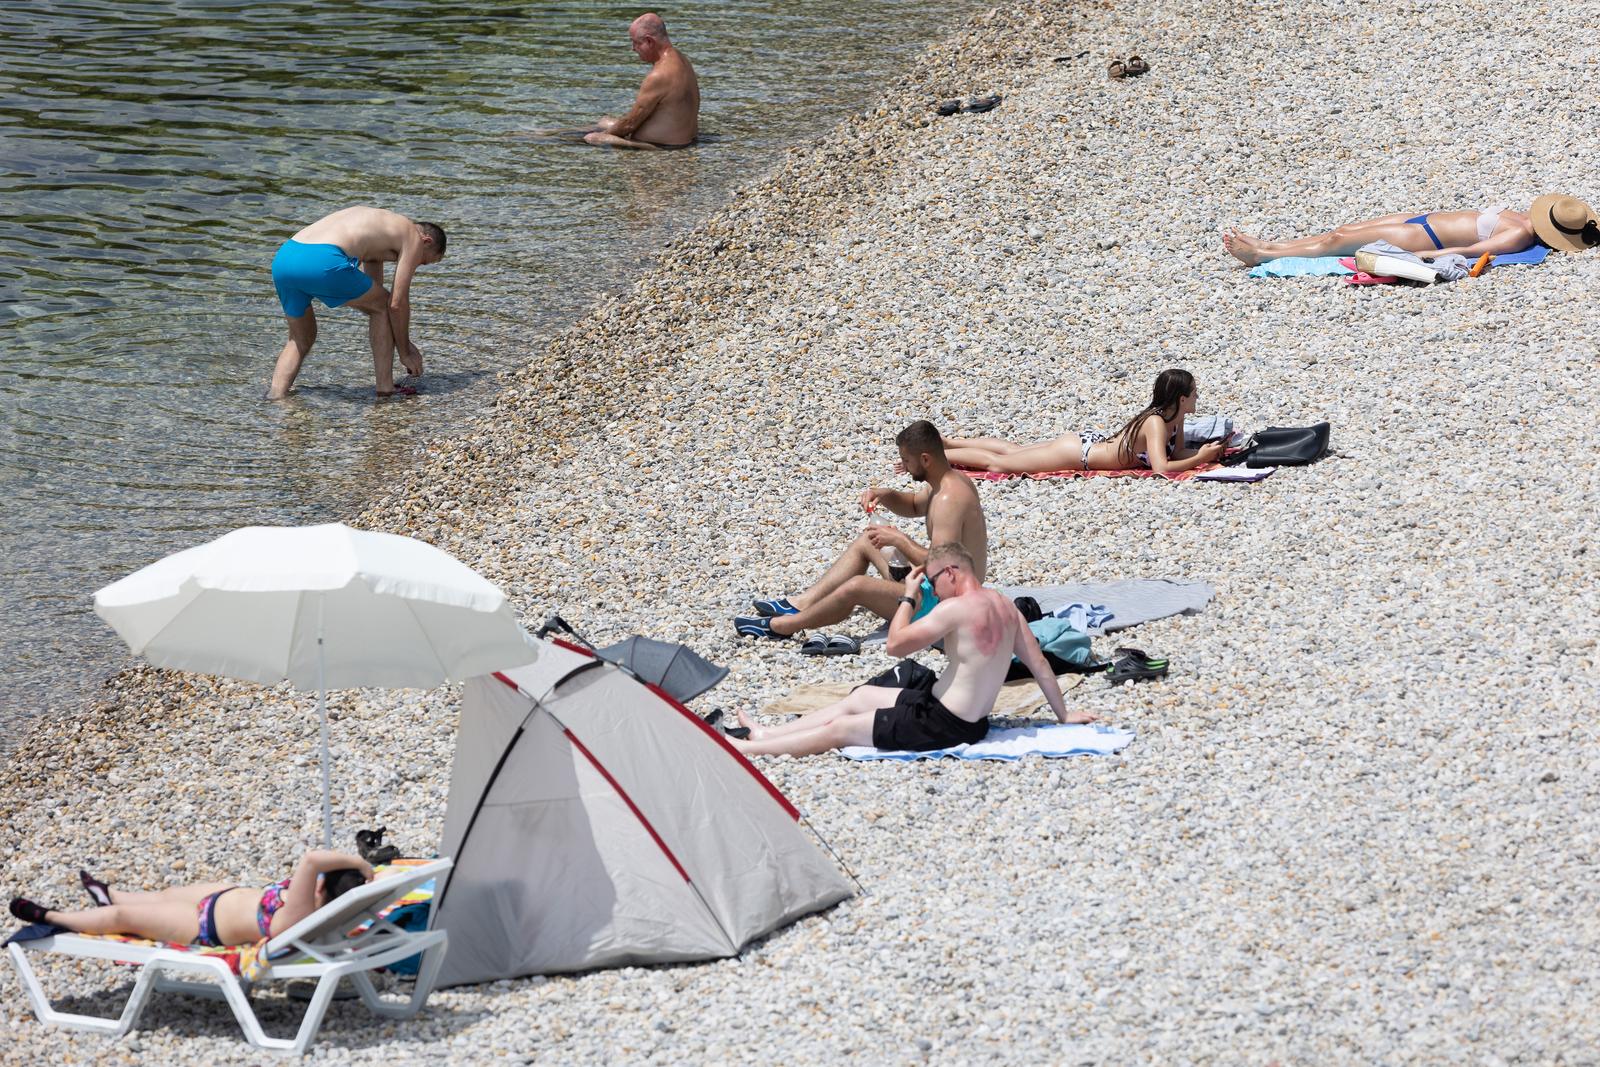 14.06.2022., Rijeka - Ljudi uzivaju na plazi Ploce u kupanju i suncanju. 


 Photo: Nel Pavletic/PIXSELL